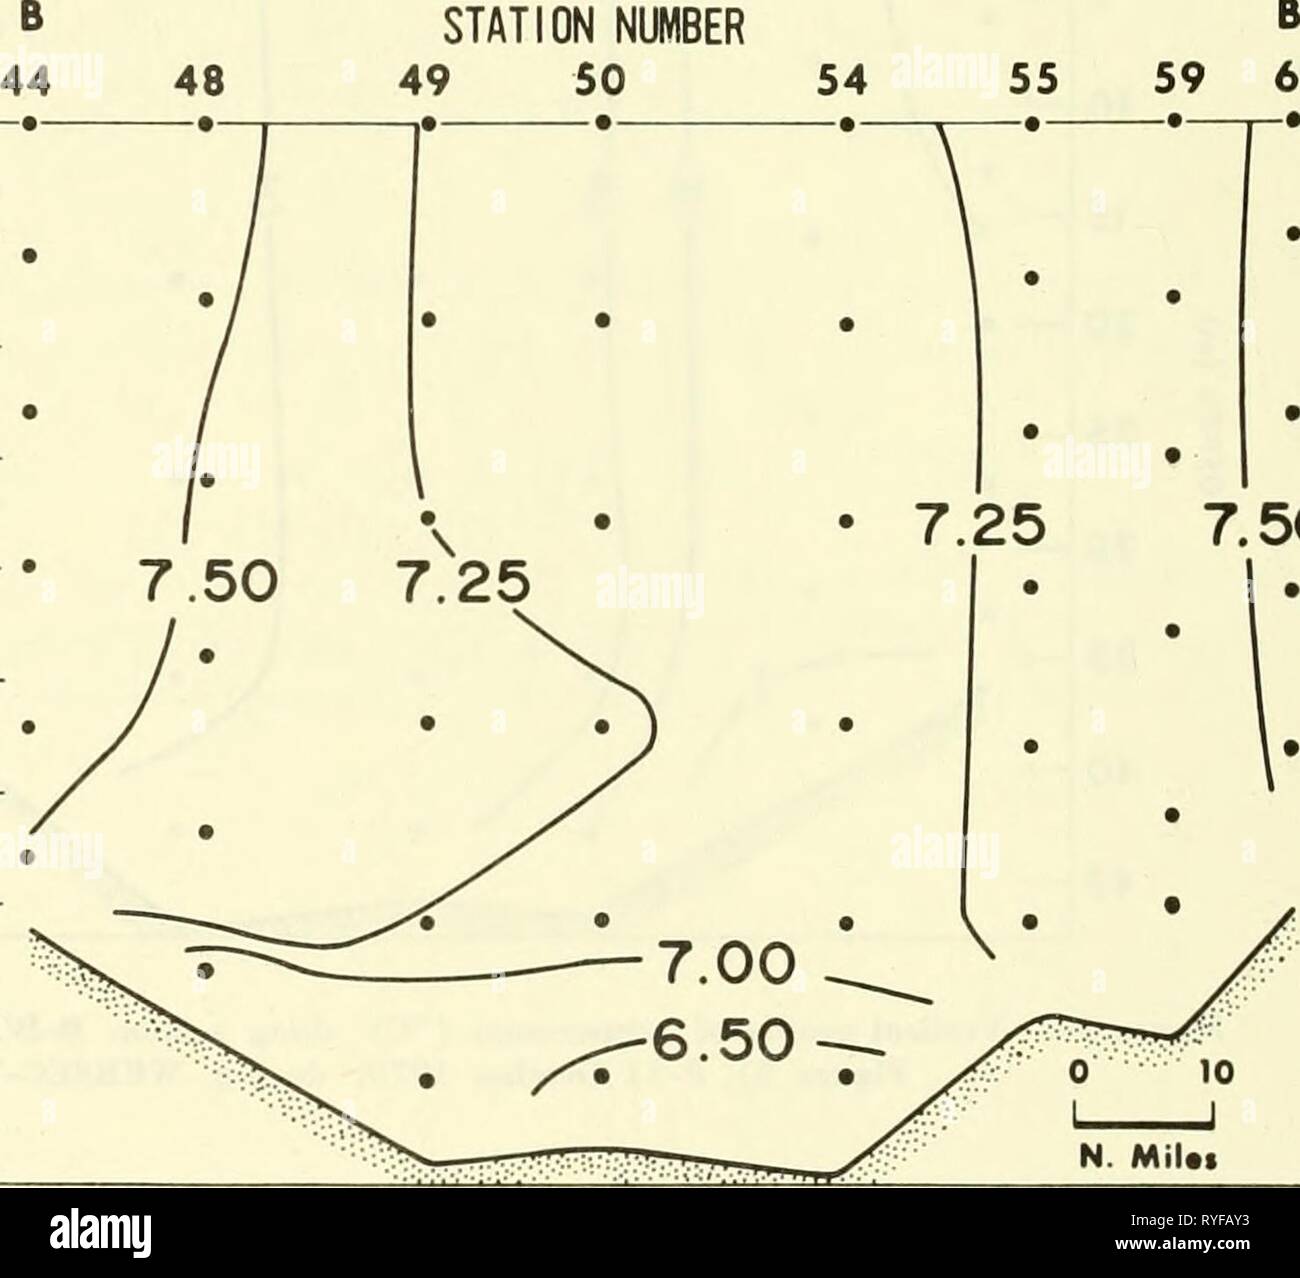 Un relevé écologique dans l'est de la mer de Chukchi : septembre-octobre 1970 ecologicalsurvey00unit Année : 1972 Figure 40.-Verlical profil de salinité (o) le long de la section B-B' (l'emplacement indiqué à la Figure 2), 8-11 octobre 1970, au cours de WEBSEC-70. 5 10 15 20 25   J-C. un 30 35 40 45 - GARE NUMÉRO 49 50 59 60 54 B' 7,50 N. MiUi 50 Figure 41.-Verlical profil d'oxygène dissous (ml/g) le long de la section B-B' (l'emplacement indiqué à la Figure 2), 8-11 octobre 1970, au cours de WEBSEC-70. Banque D'Images